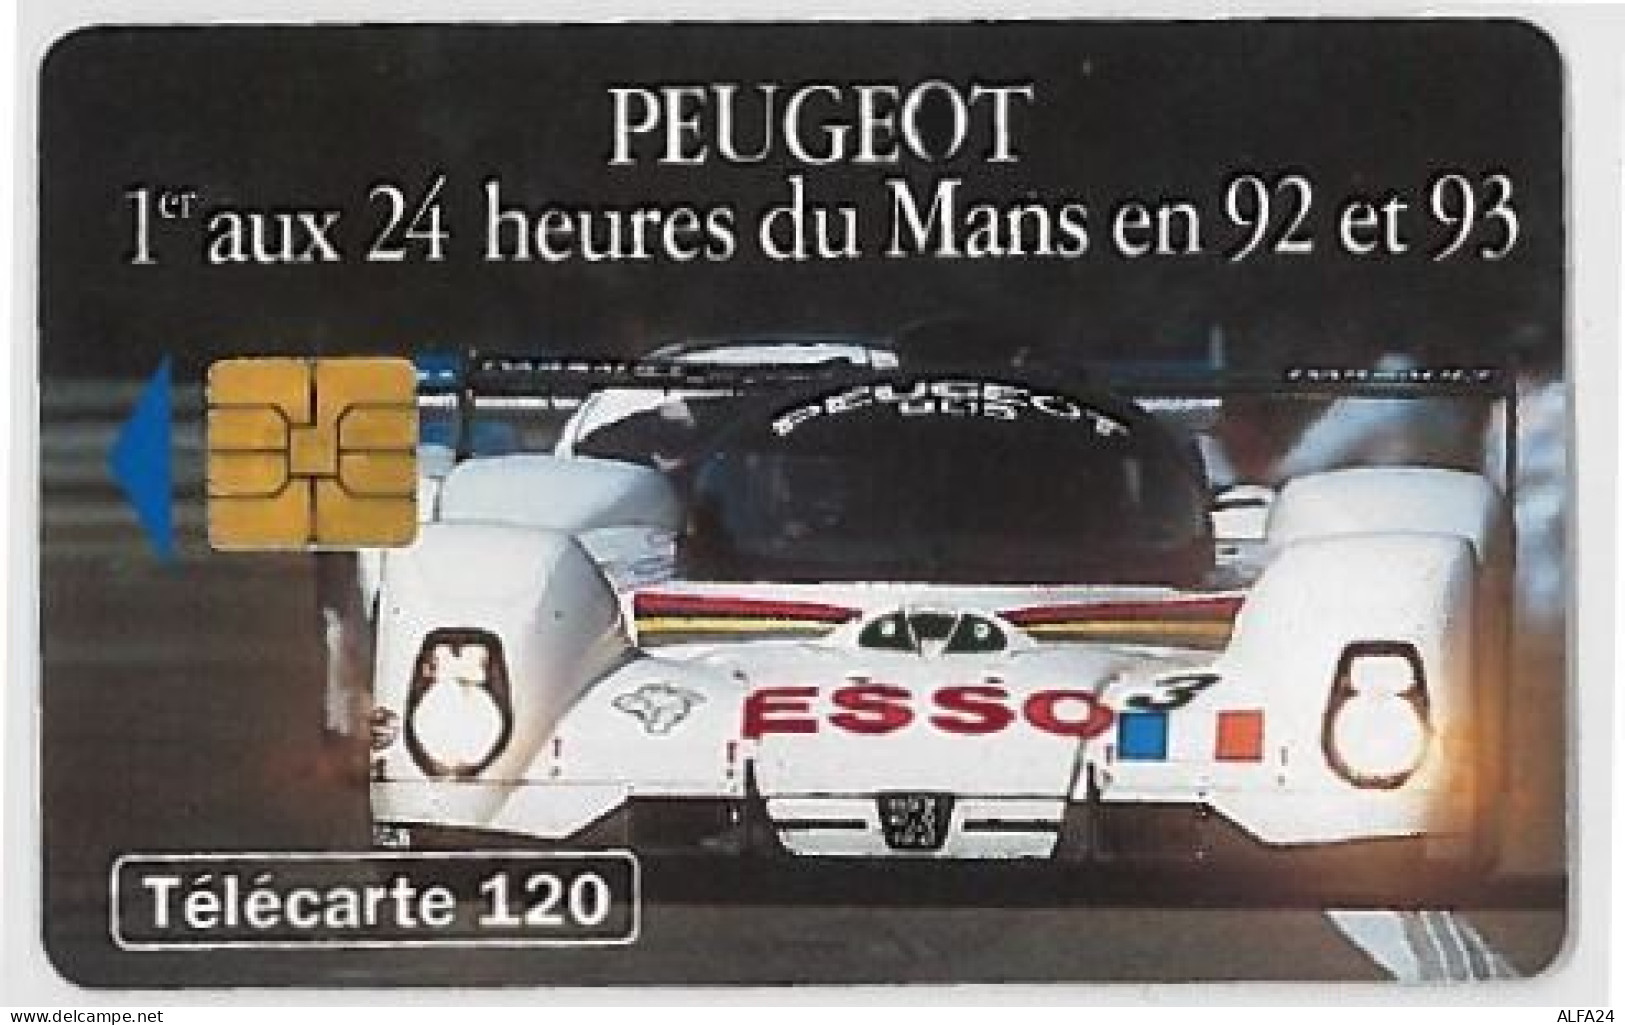 TELECARTE F404 PEUGEOT VOITURE DE FACE - 1993